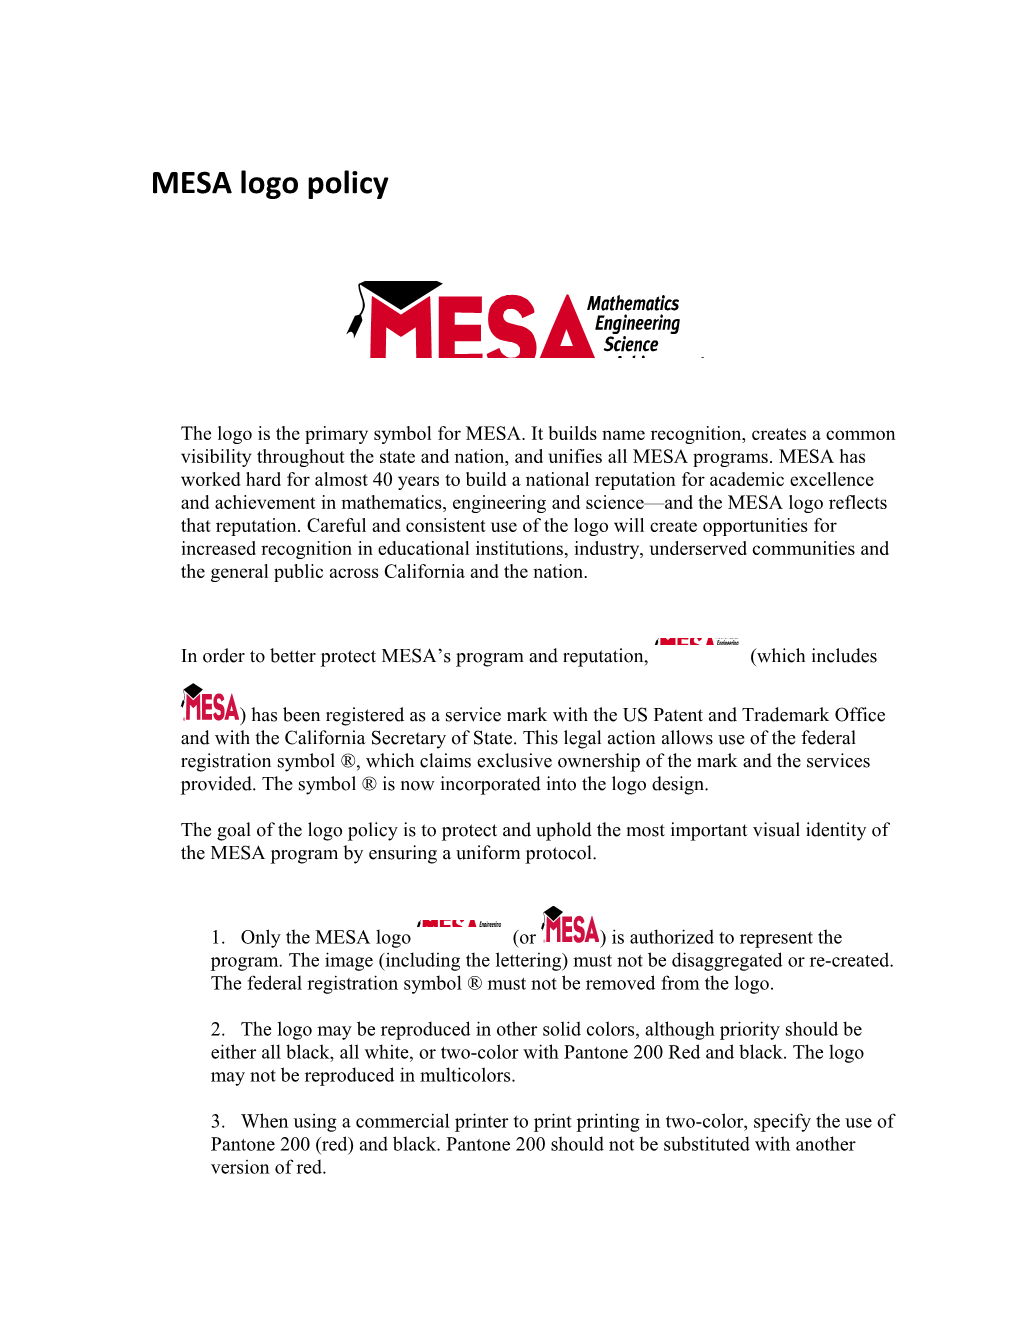 MESA Logo Policy